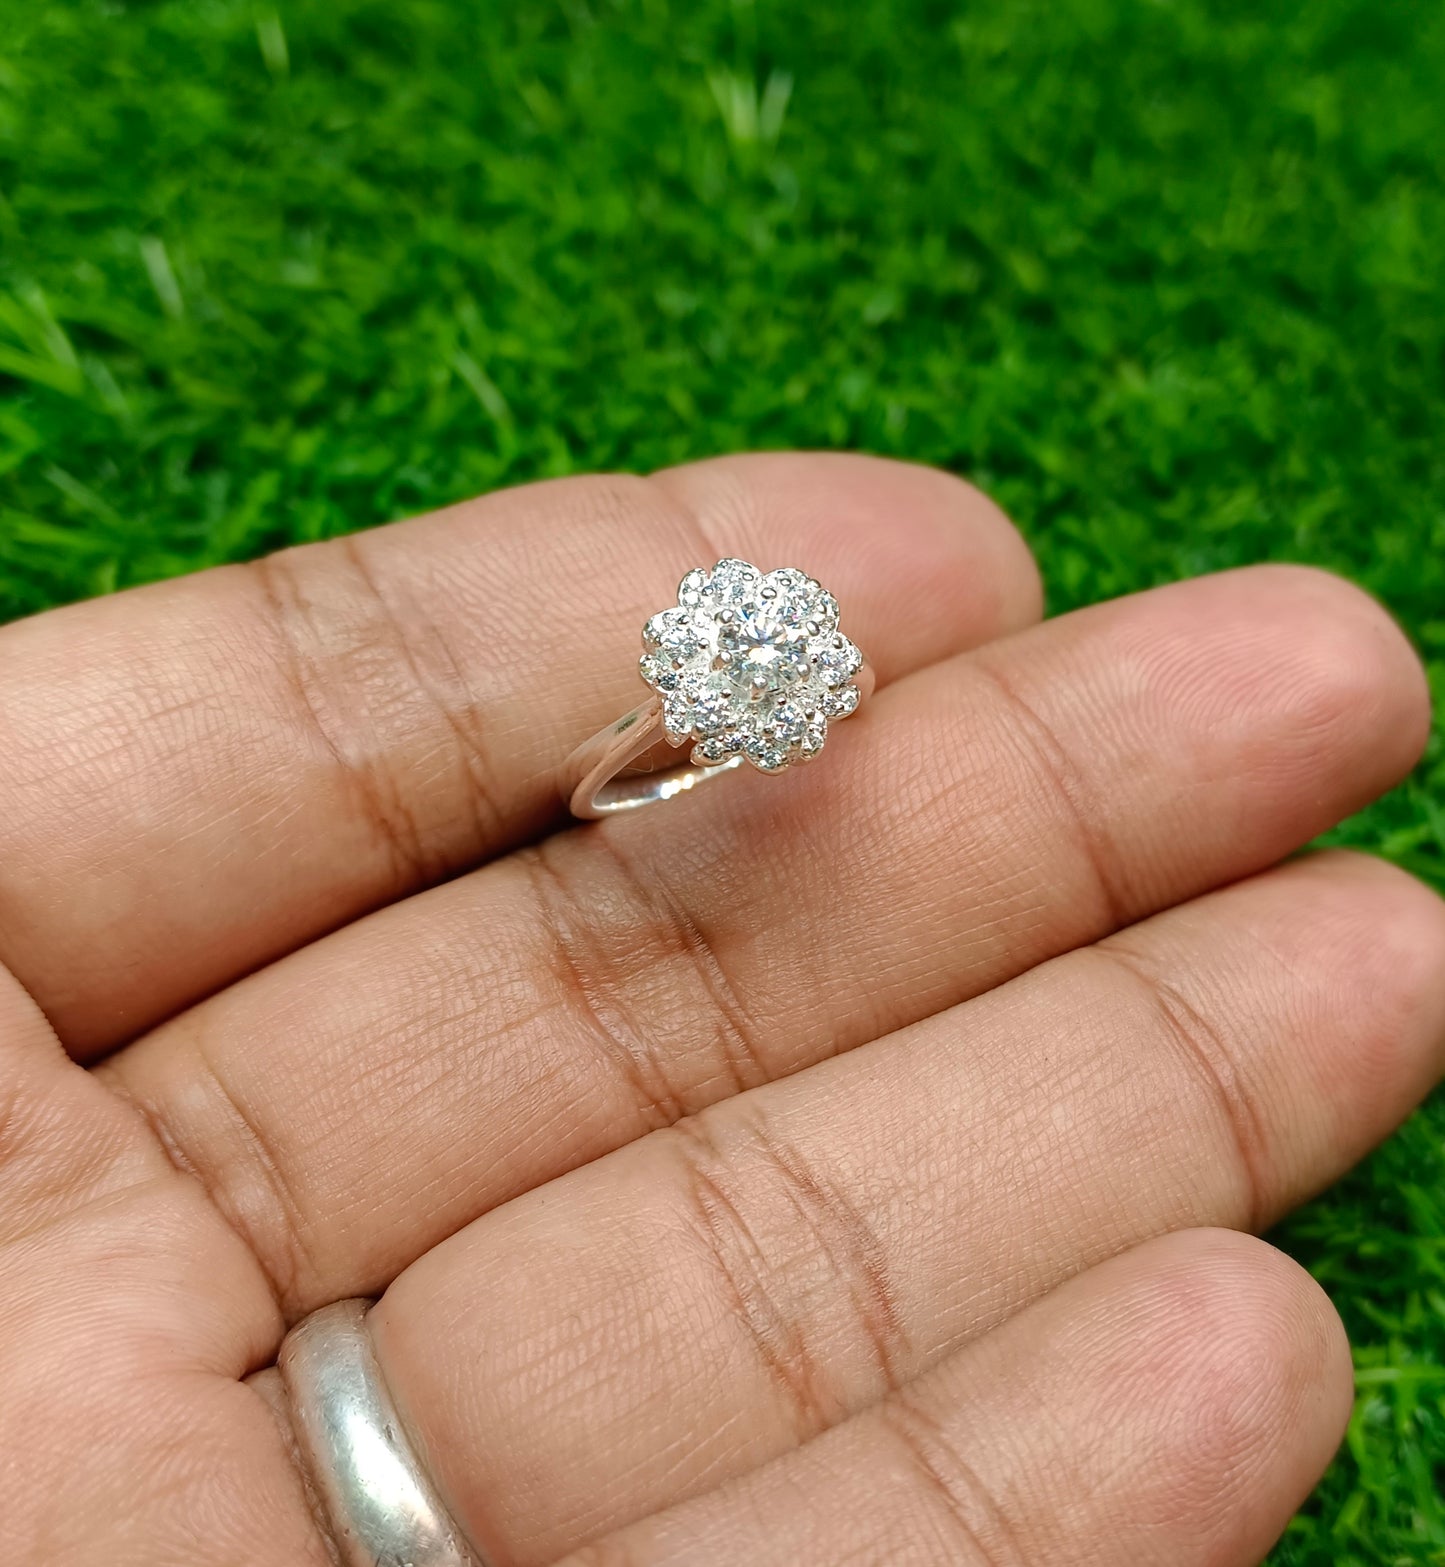 Moissanite diamond 0.5 CRT Ring